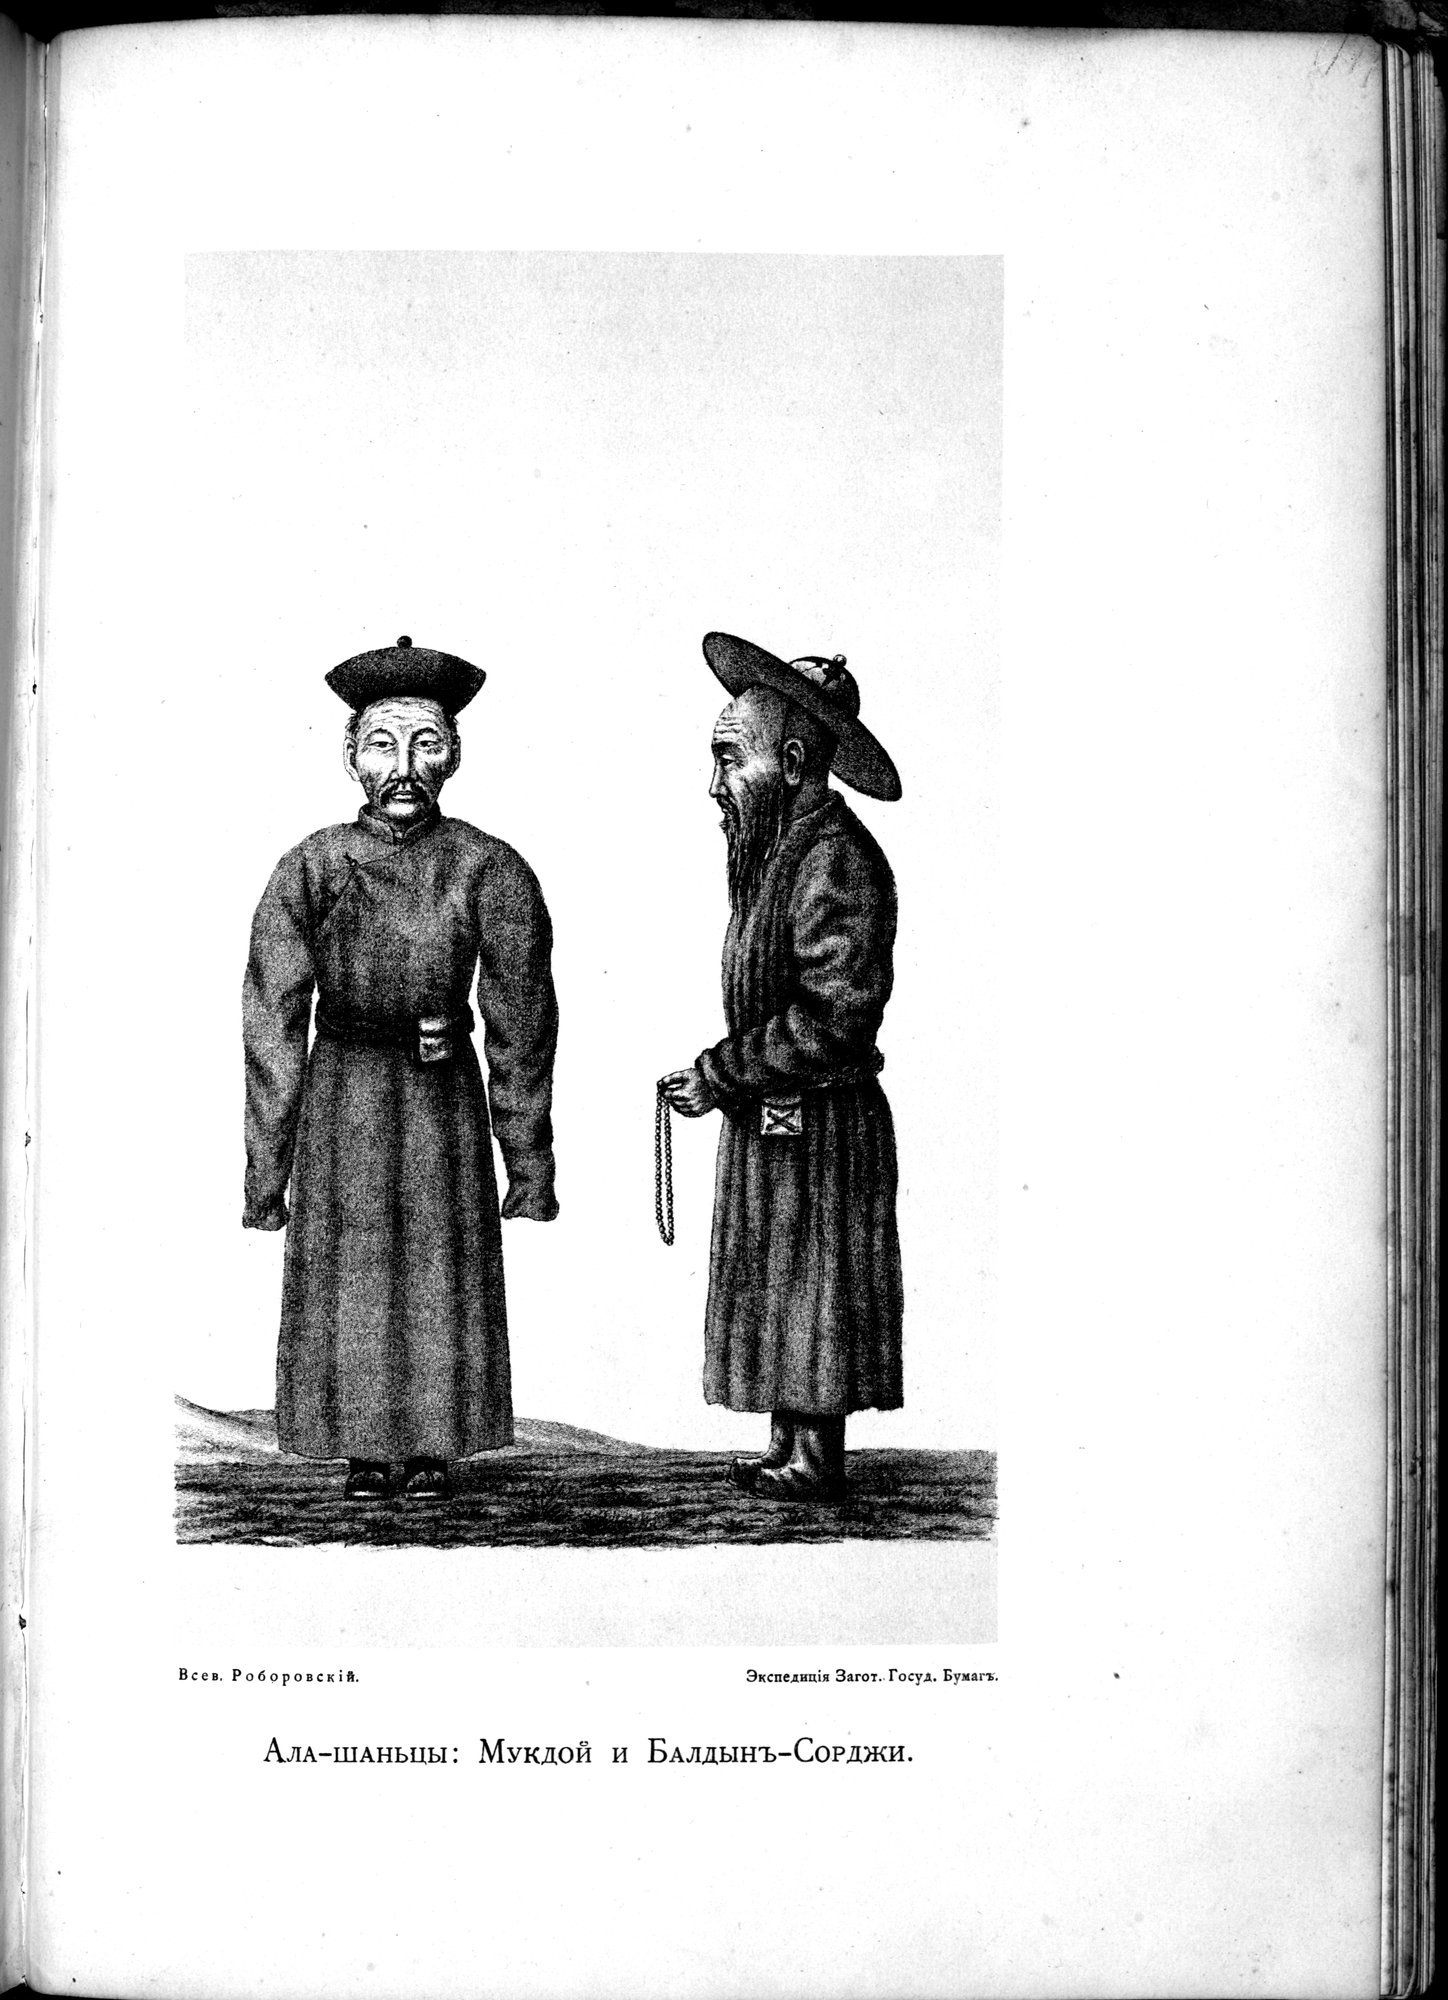 Iz Zaisana Cherez Khami v Tibet i na Verkhov'ya Zheltoi reki : vol.1 / Page 663 (Grayscale High Resolution Image)